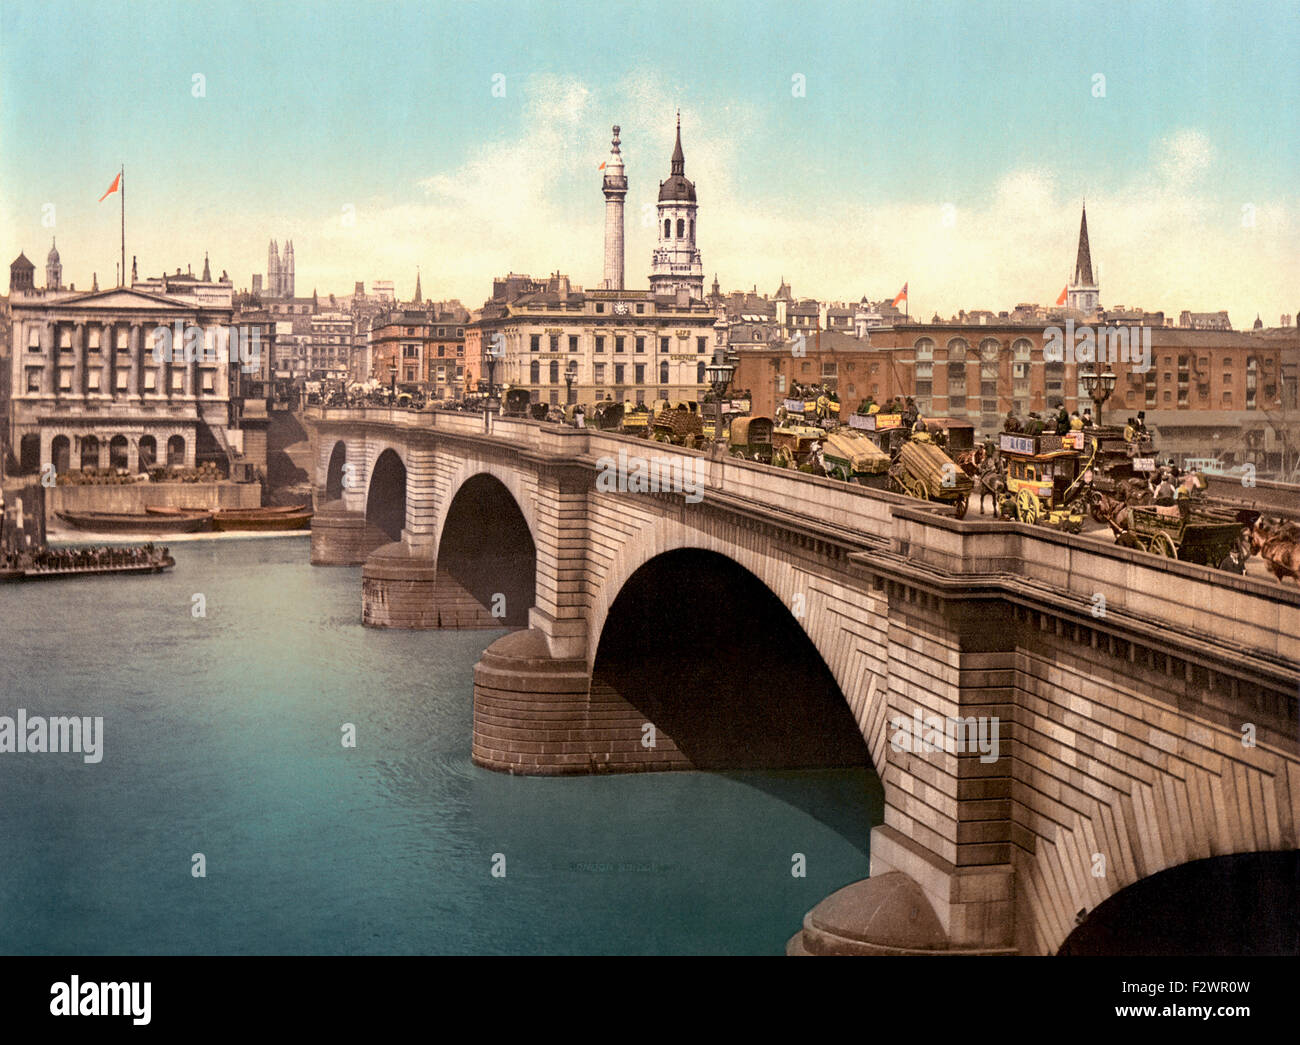 London, England.  London Bridge über die Themse.  Aus dem späten 19. Jahrhundert Foto zeigt die viktorianischen Stein Version der Brücke Bogen, die von 1832 bis 1968 existierte. Stockfoto